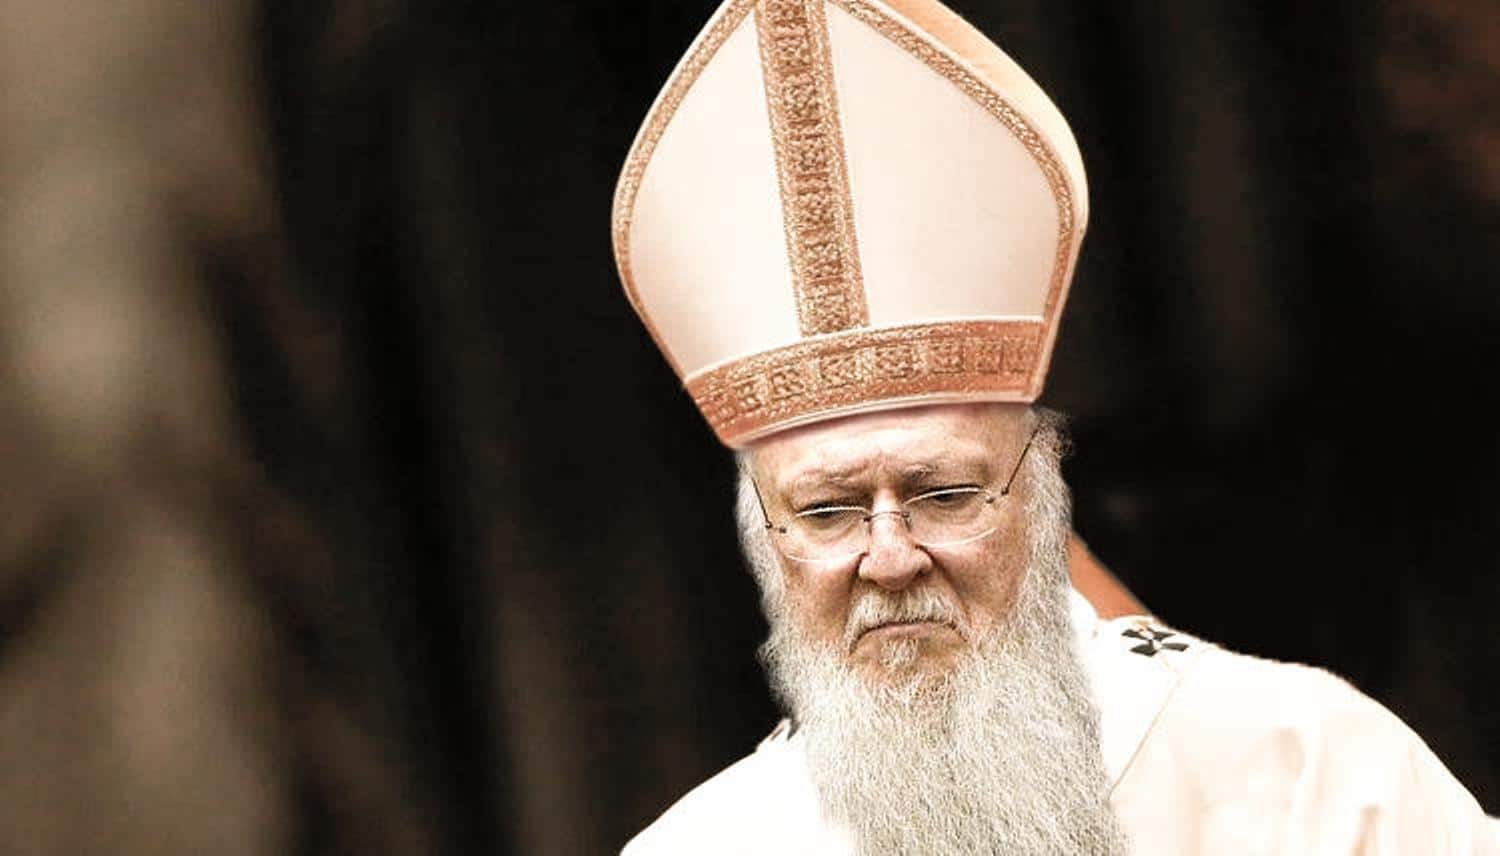 Смене православних владика по списку бискупа Грише новотарца